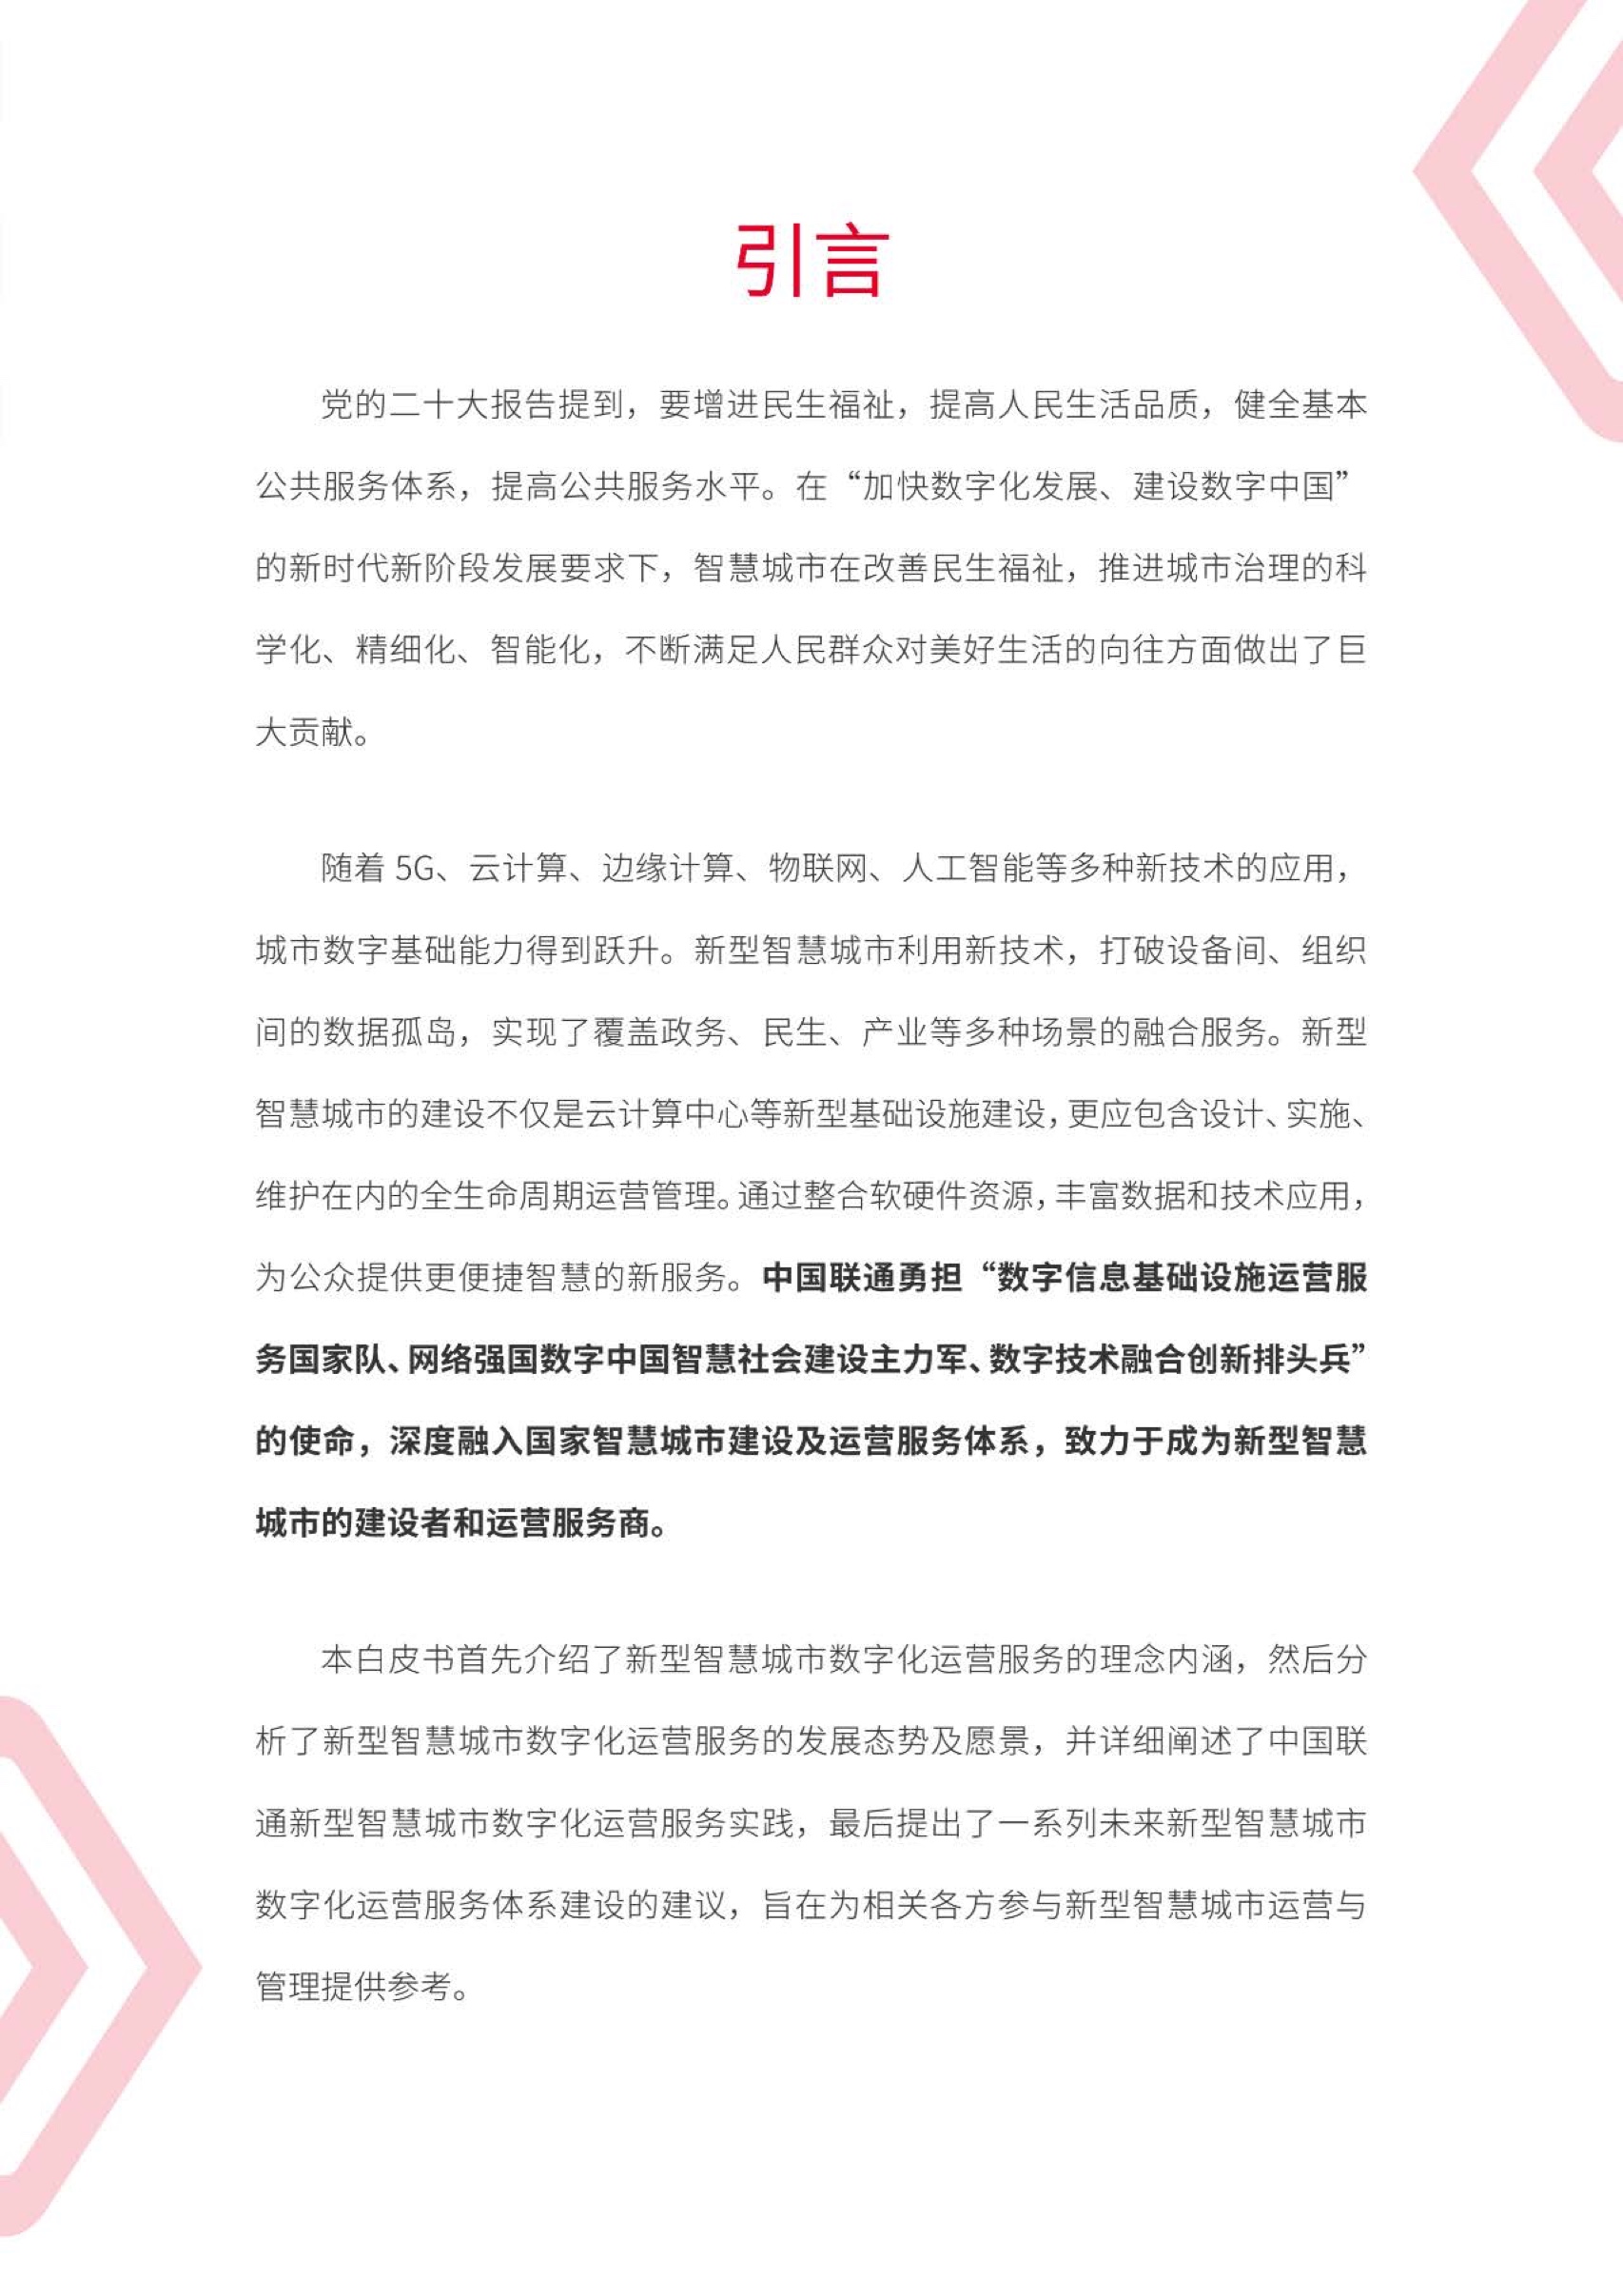 2022年中国联通新型智慧城市数字化运营服务白皮书